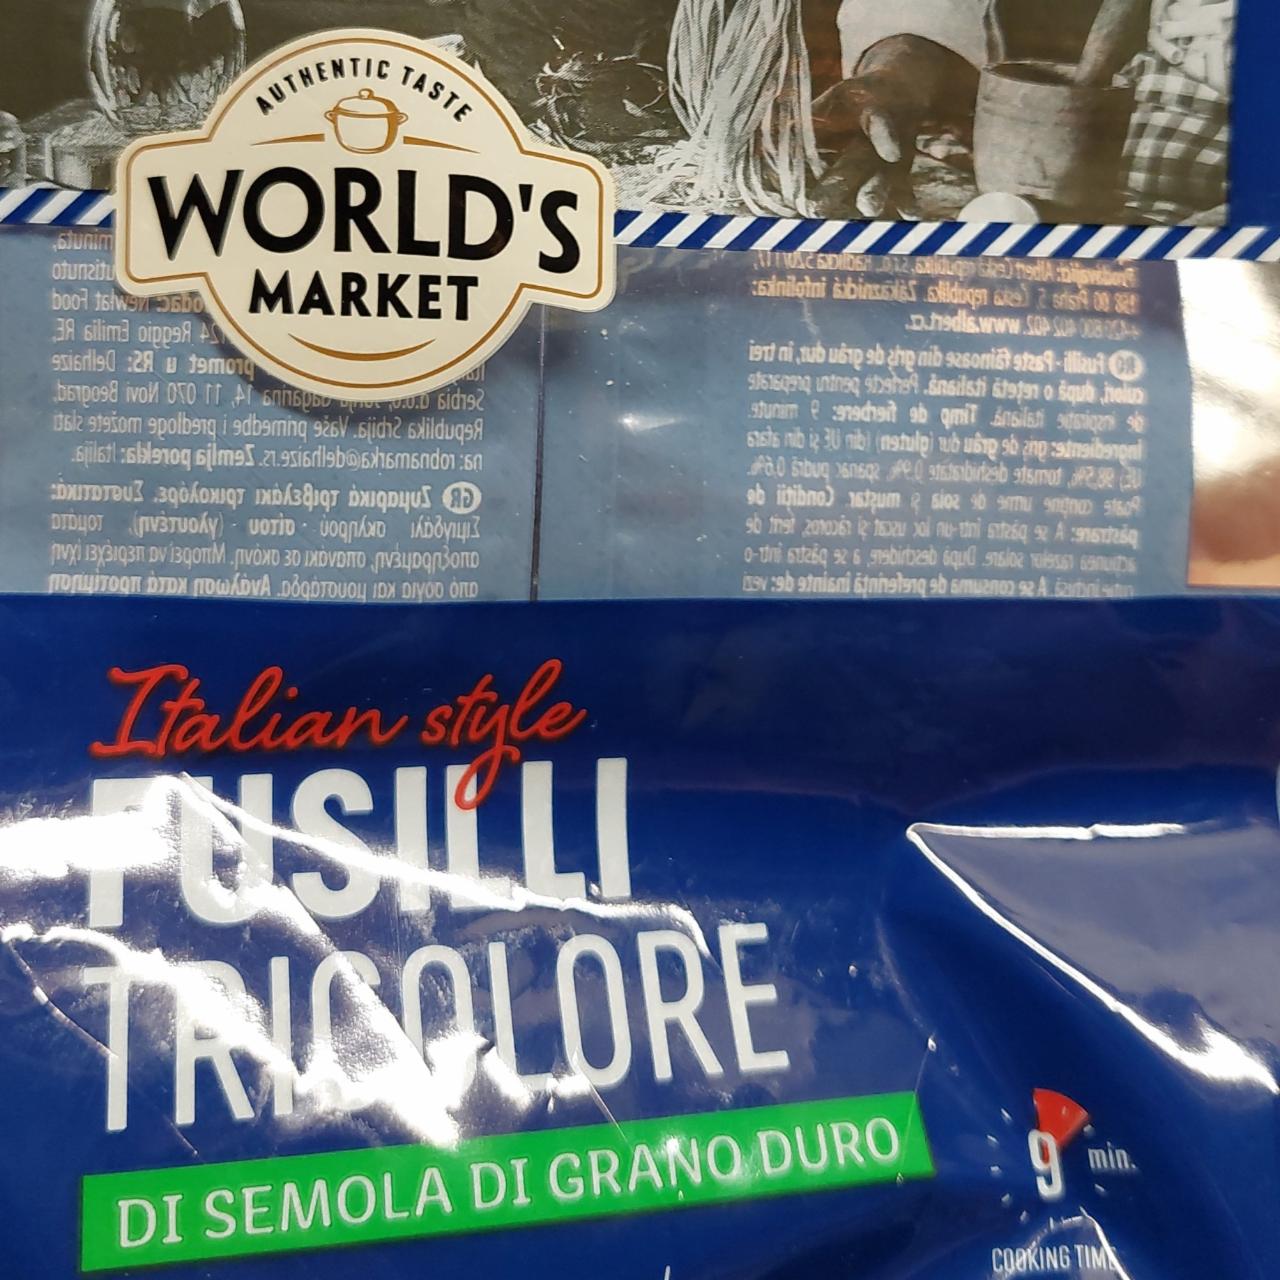 Fotografie - Italian style Fusilli Tricolore di semola di grano duro World's market